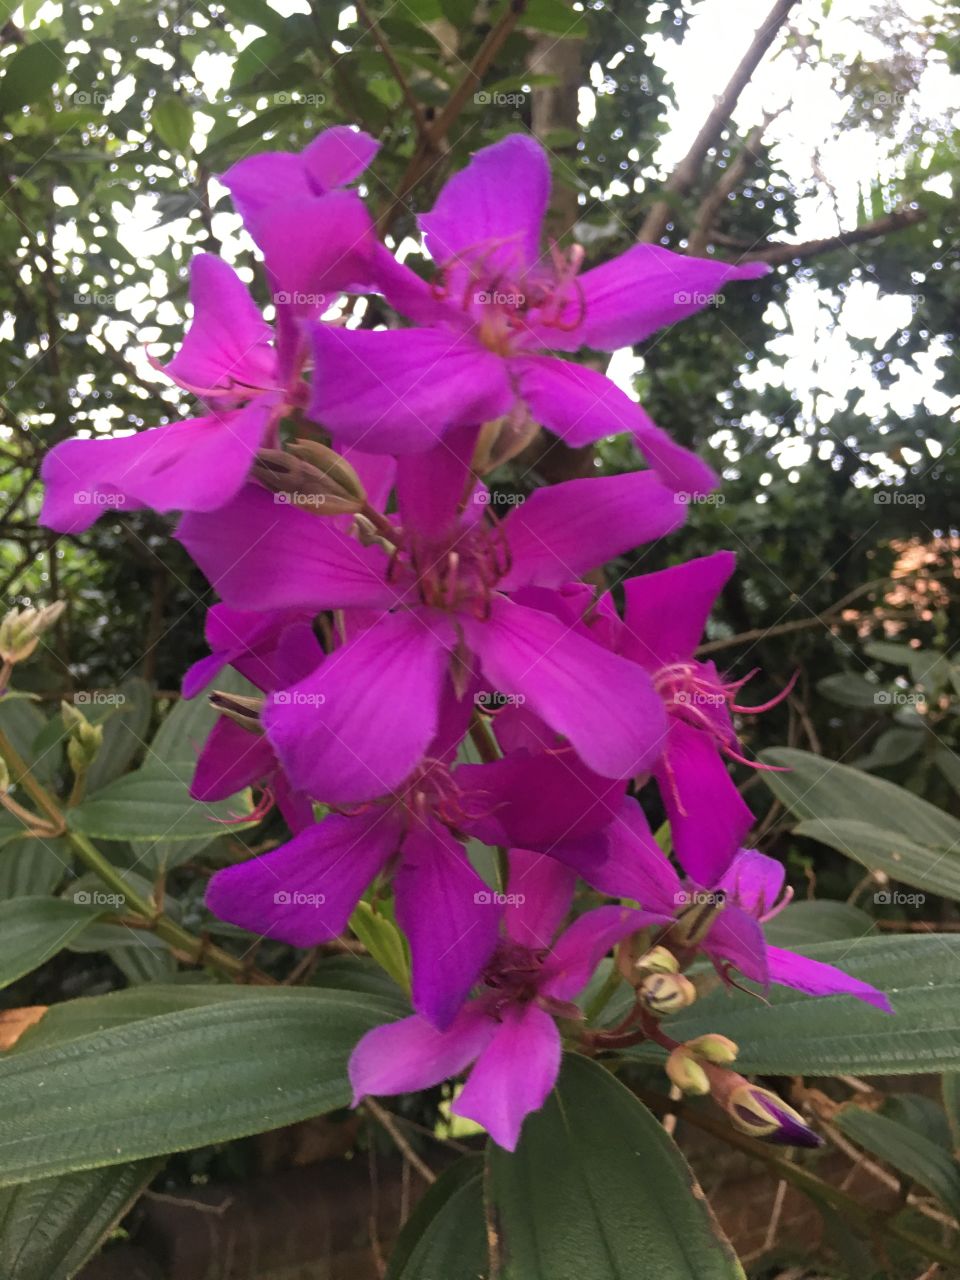 Lovely purple flowers 